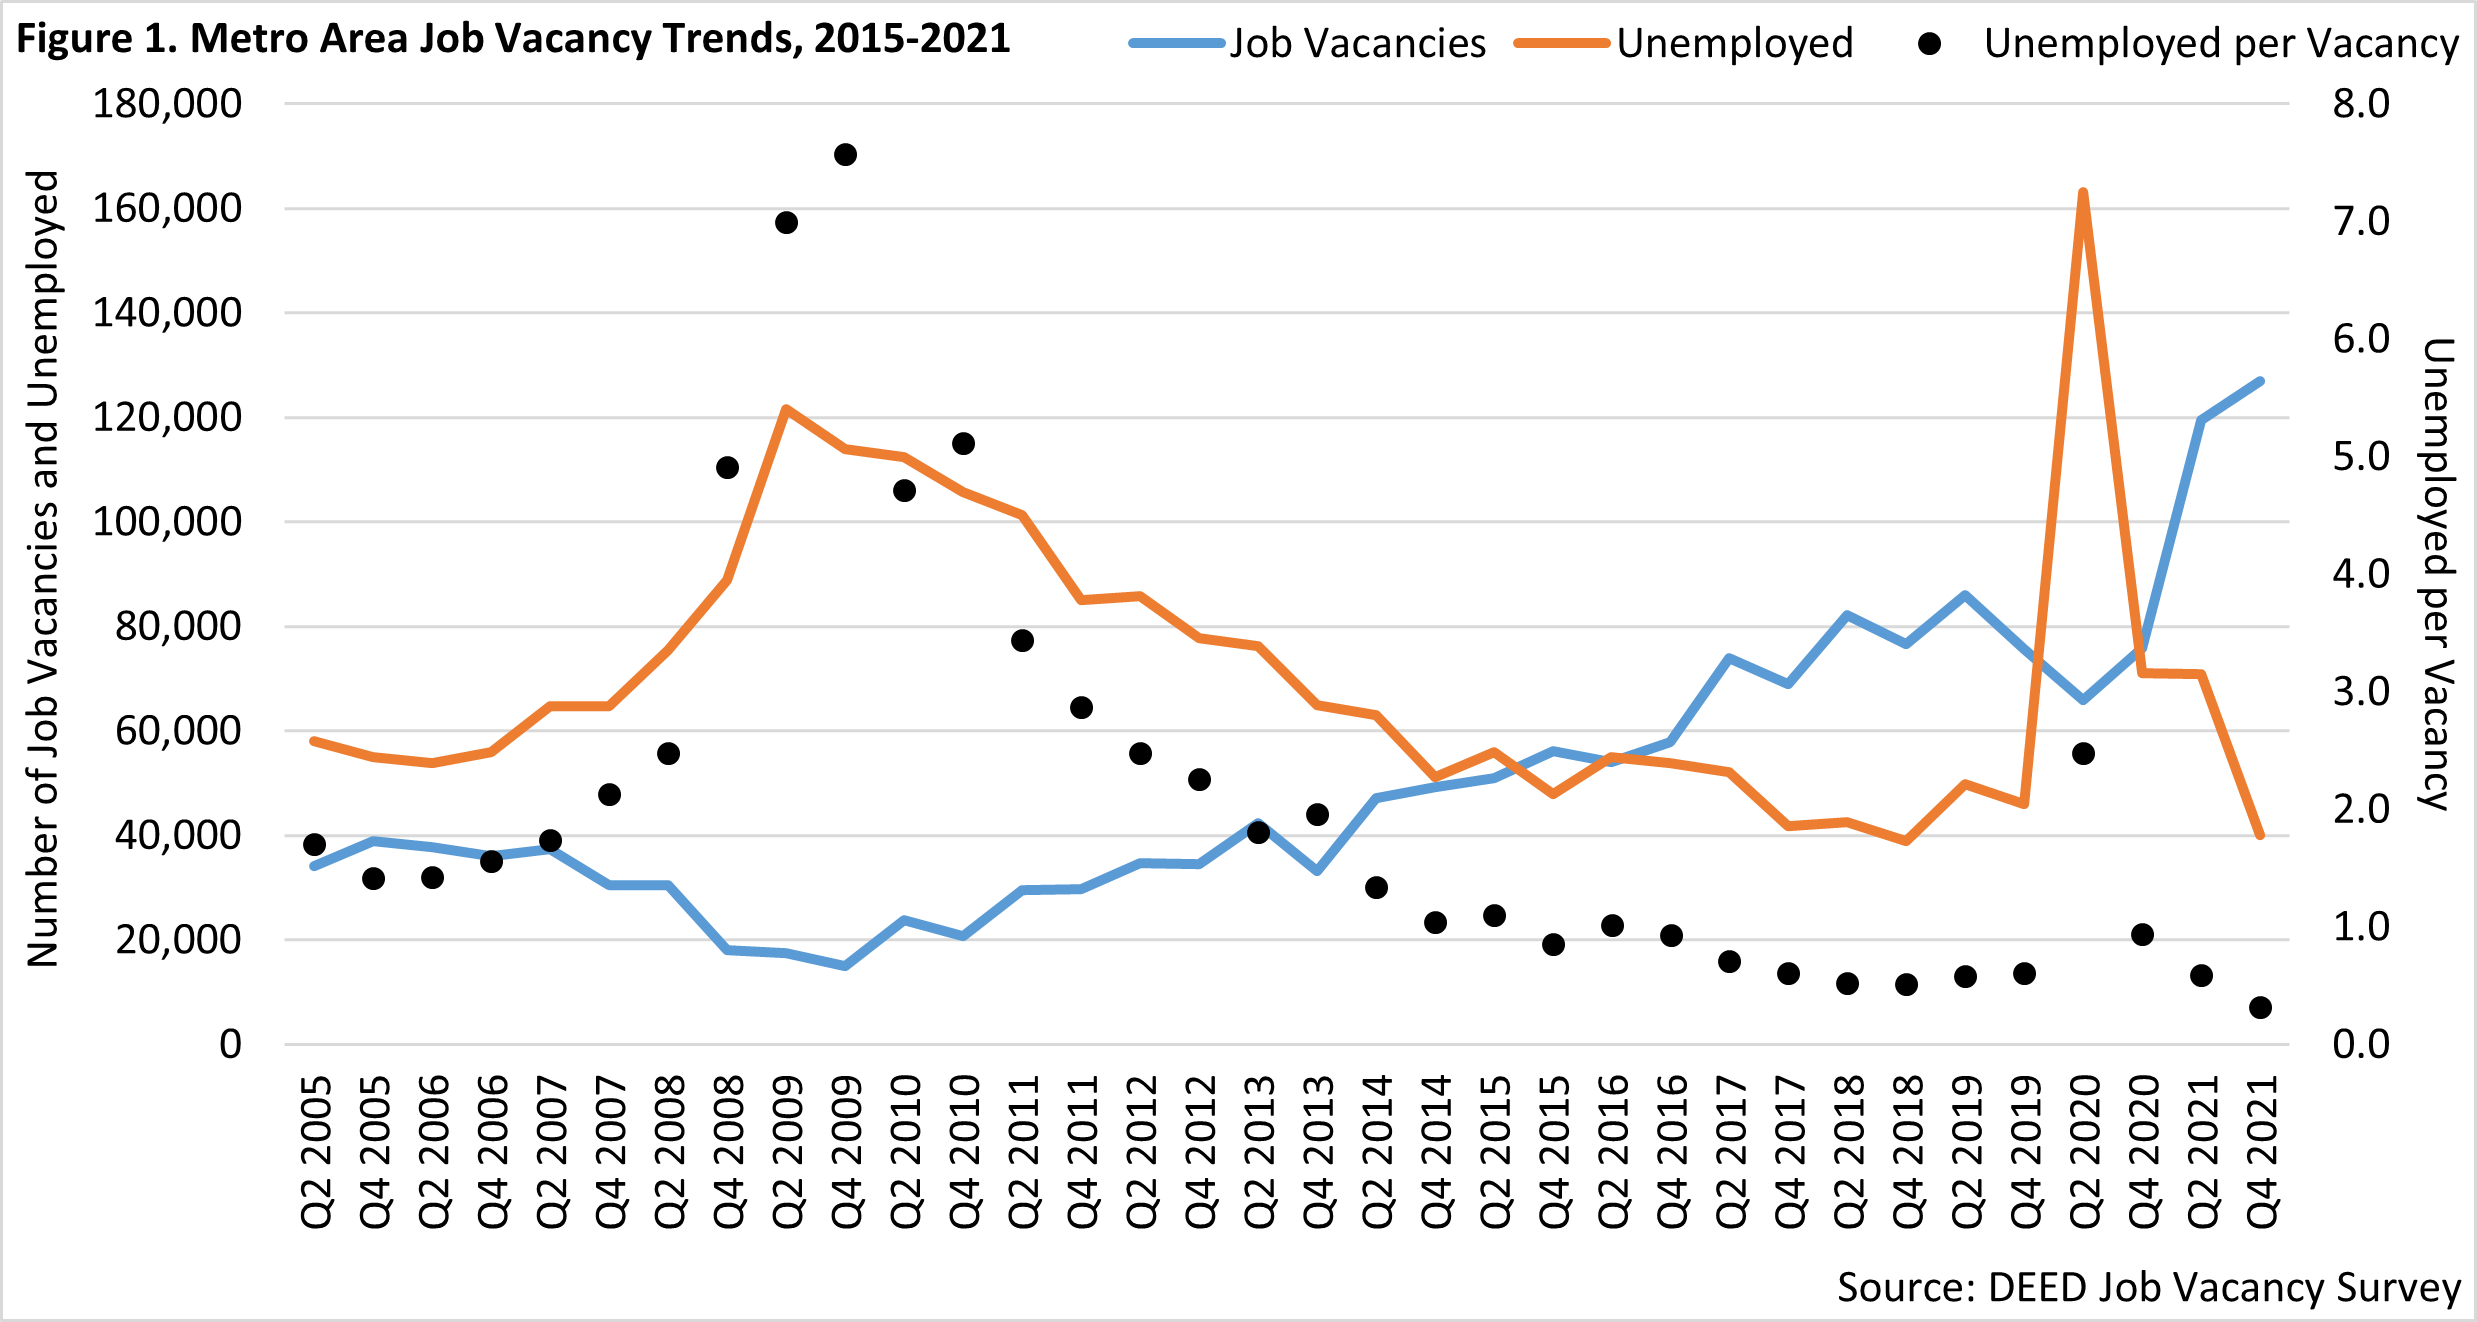 Metro Area Job Vacancy Trends